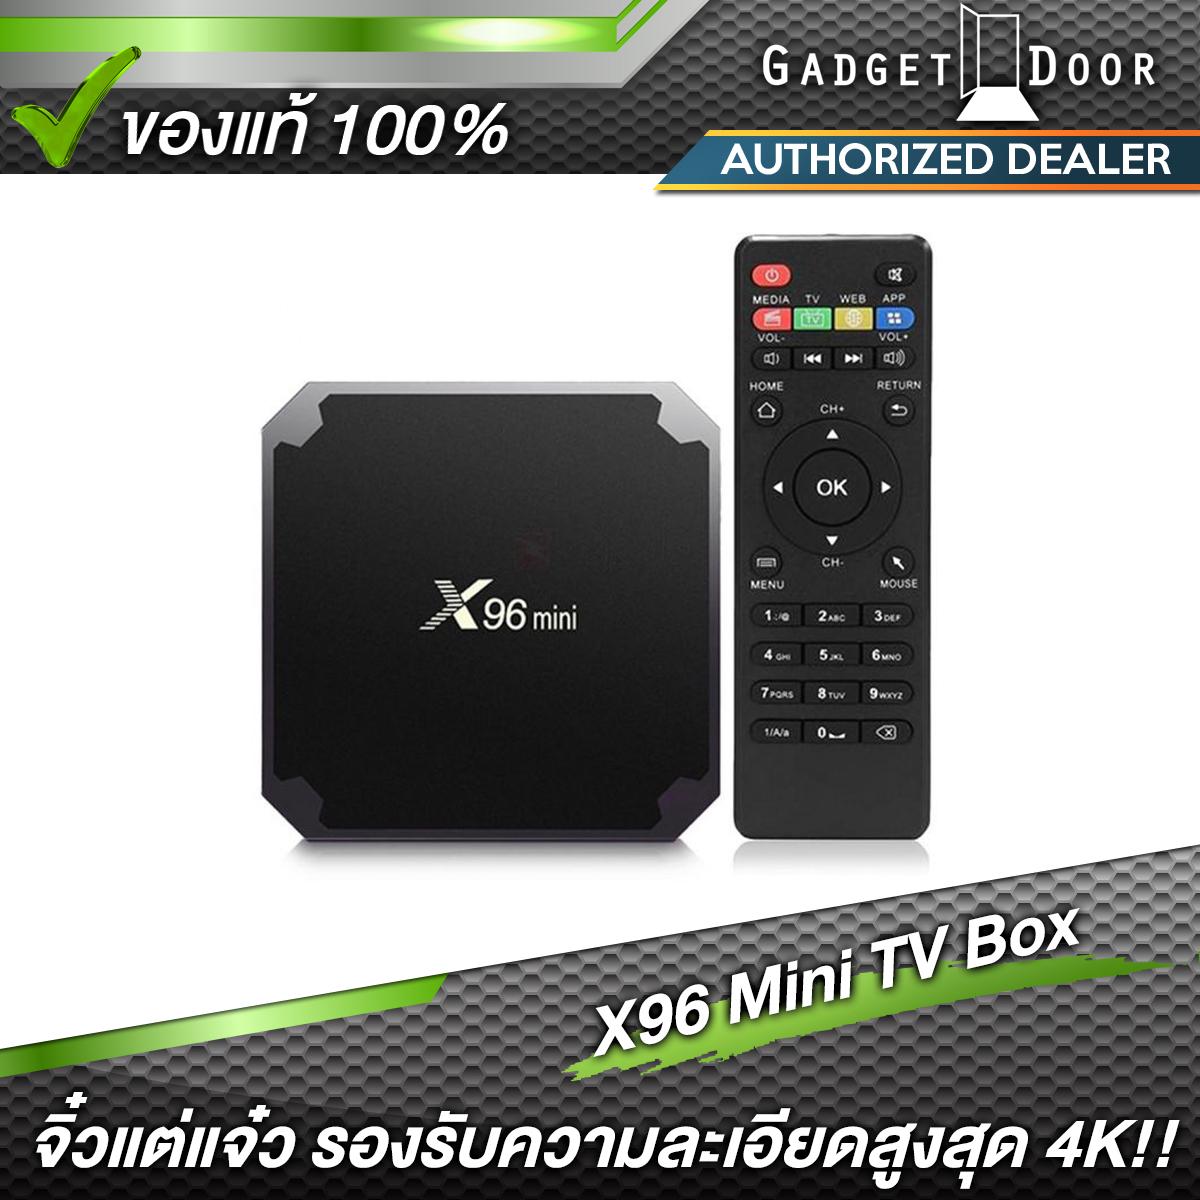  นครพนม OTT TV X96 Mini TV Box Video 4K S905W Quad Core 2.0GHz Android 7.1.2 1GB/8GB (Black)